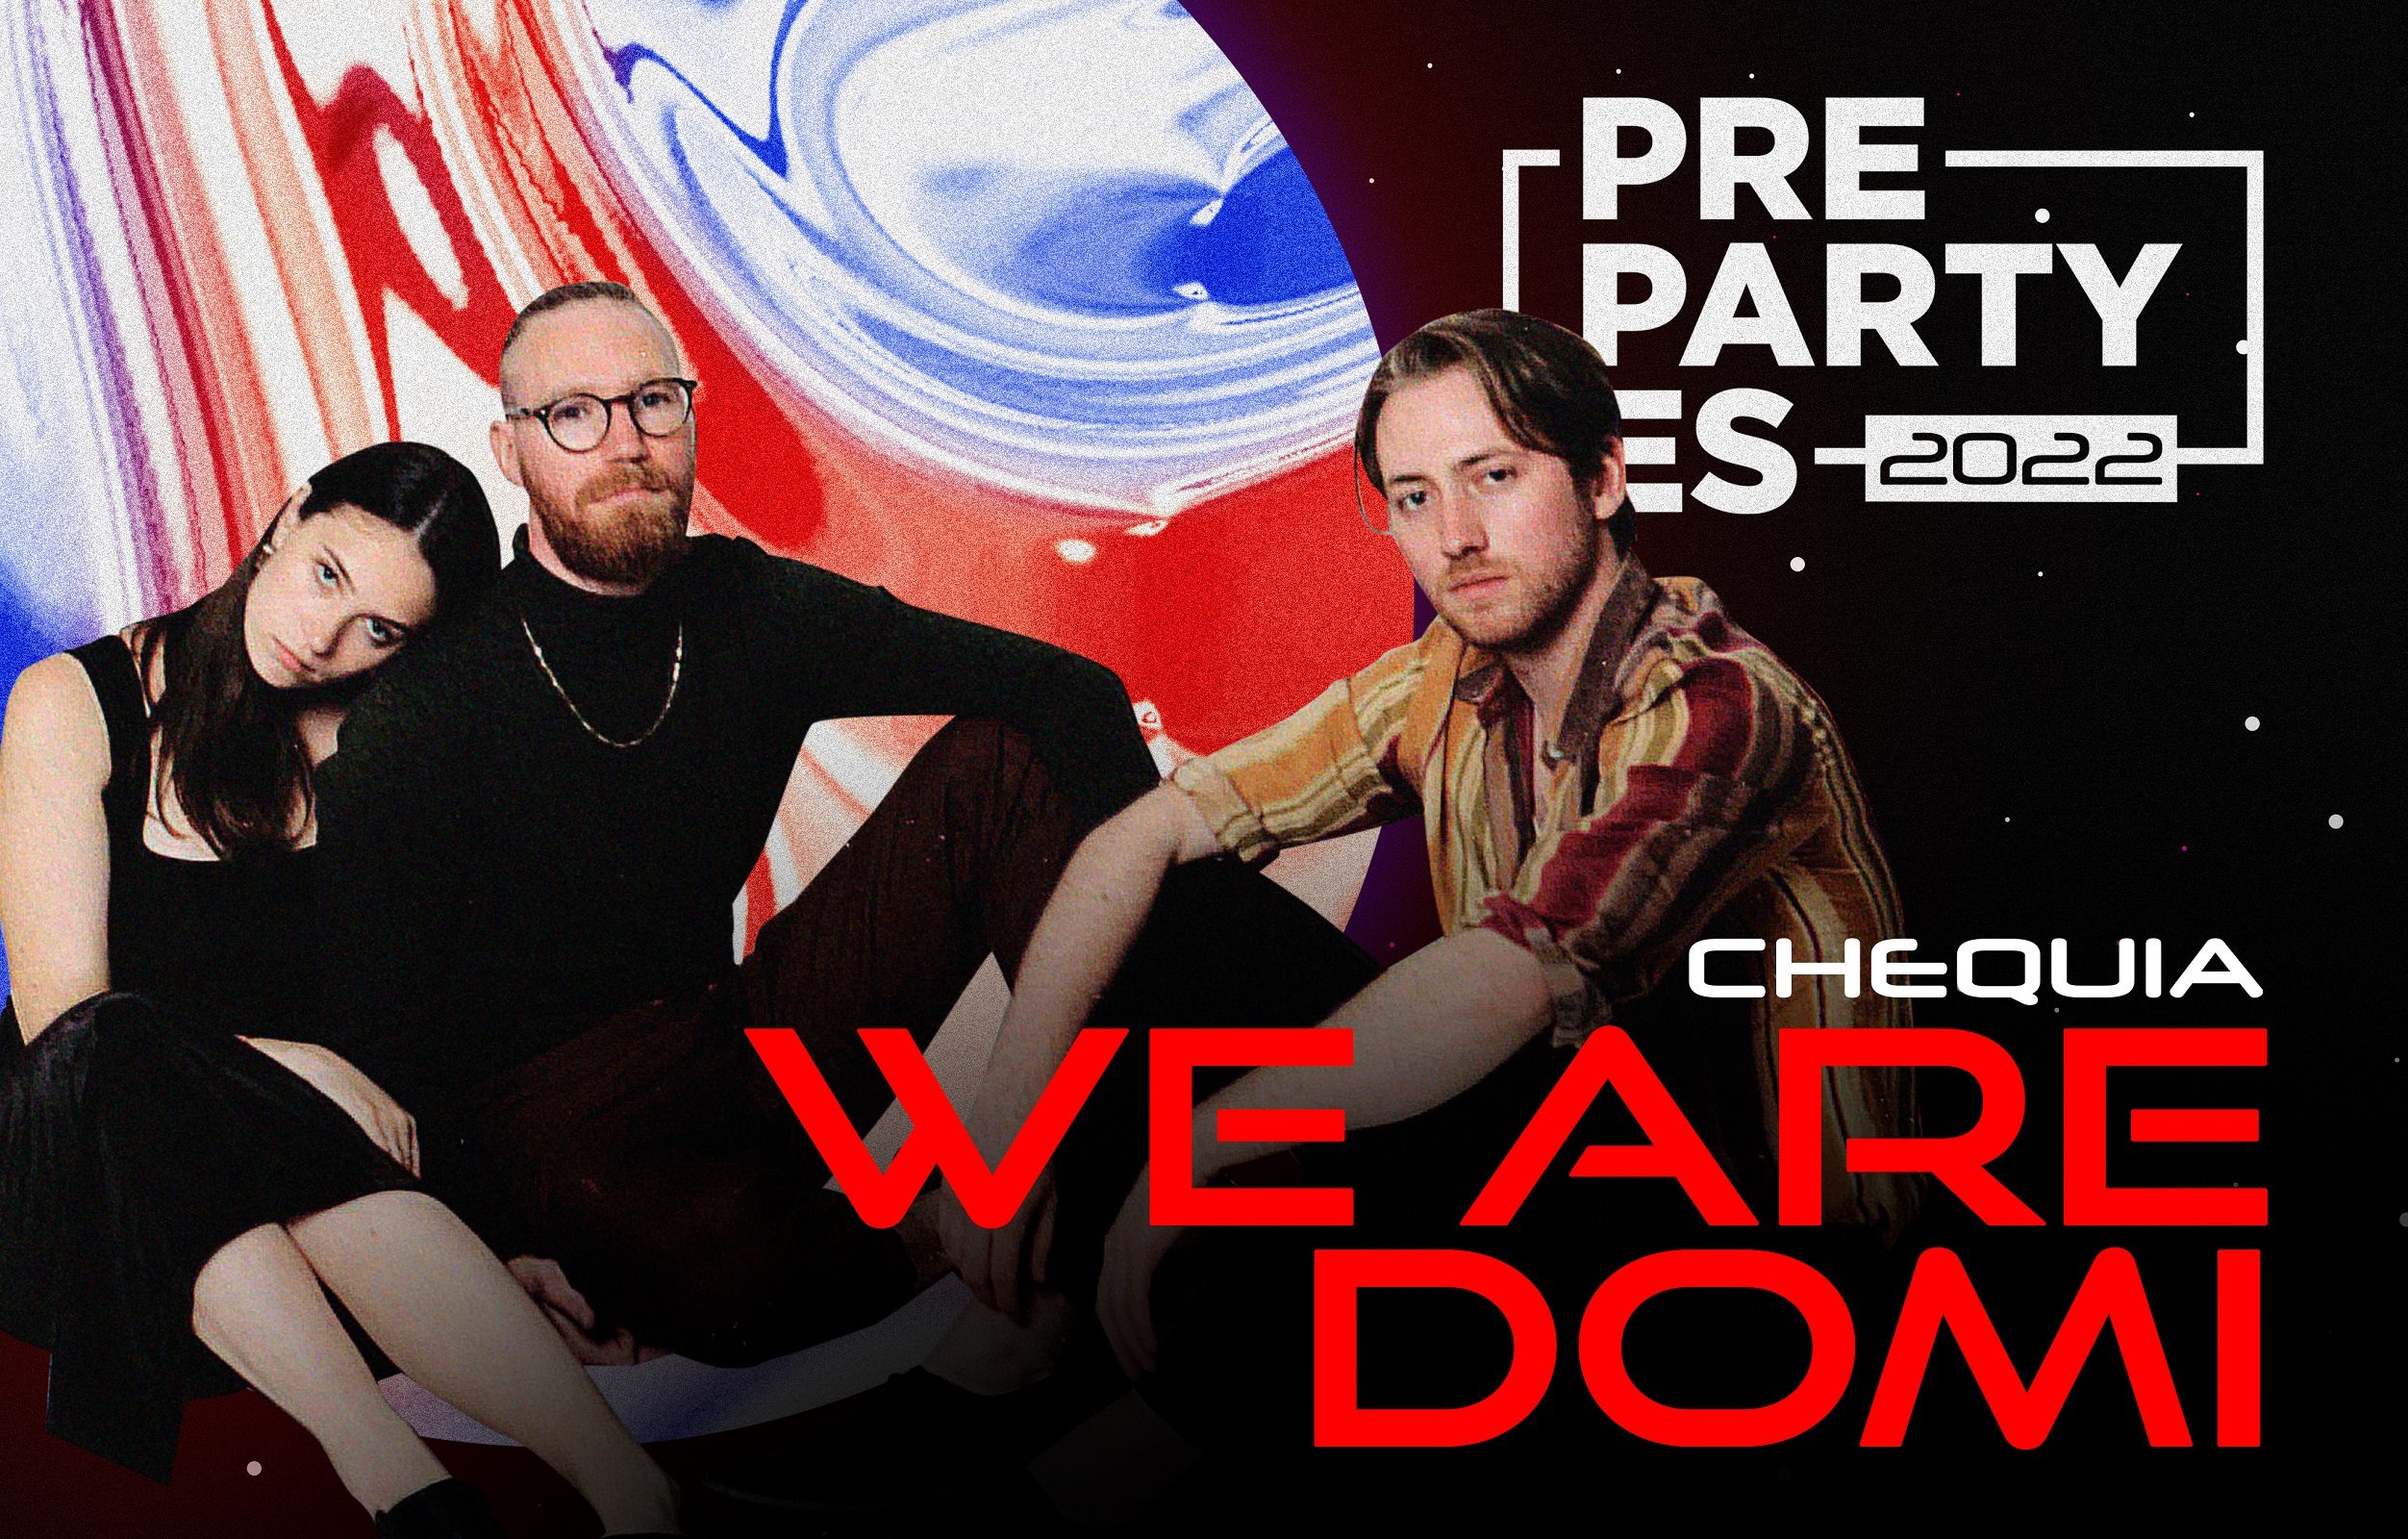 ¡Los checos We Are Domi actuarán en la #PrePartyES22 para hacerte bailar y disfrutar!